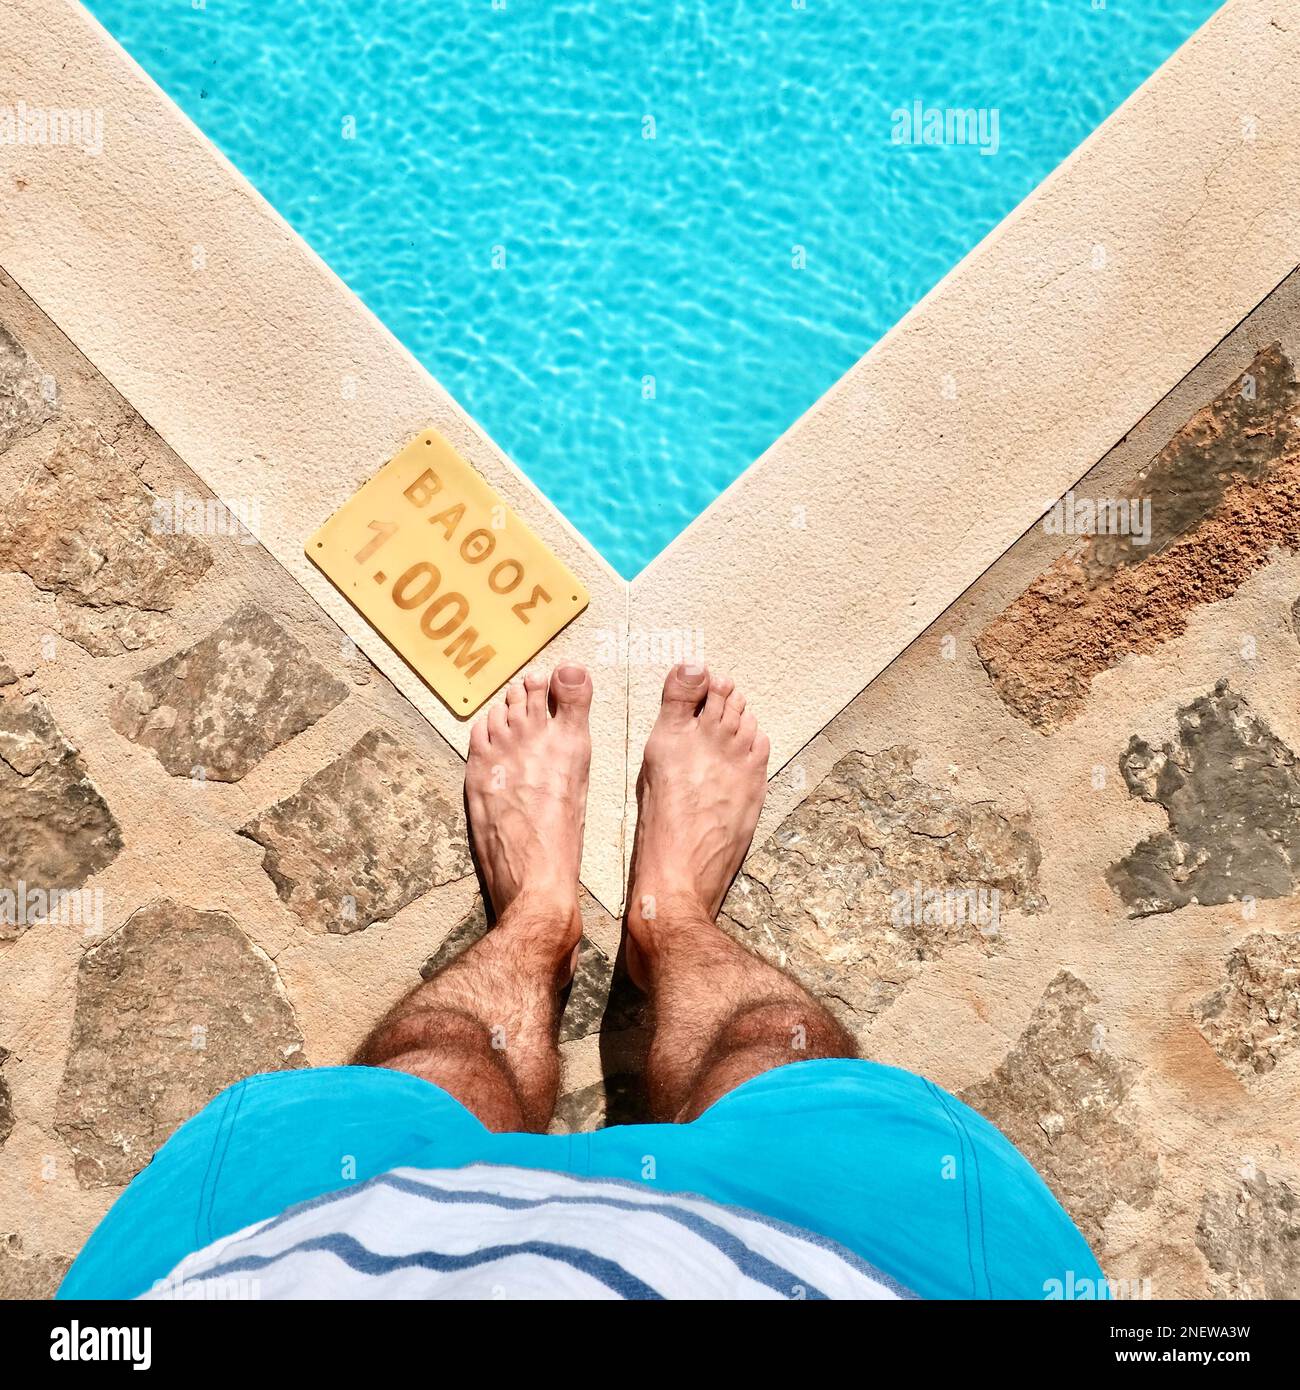 Feet in a pool immagini e fotografie stock ad alta risoluzione - Alamy